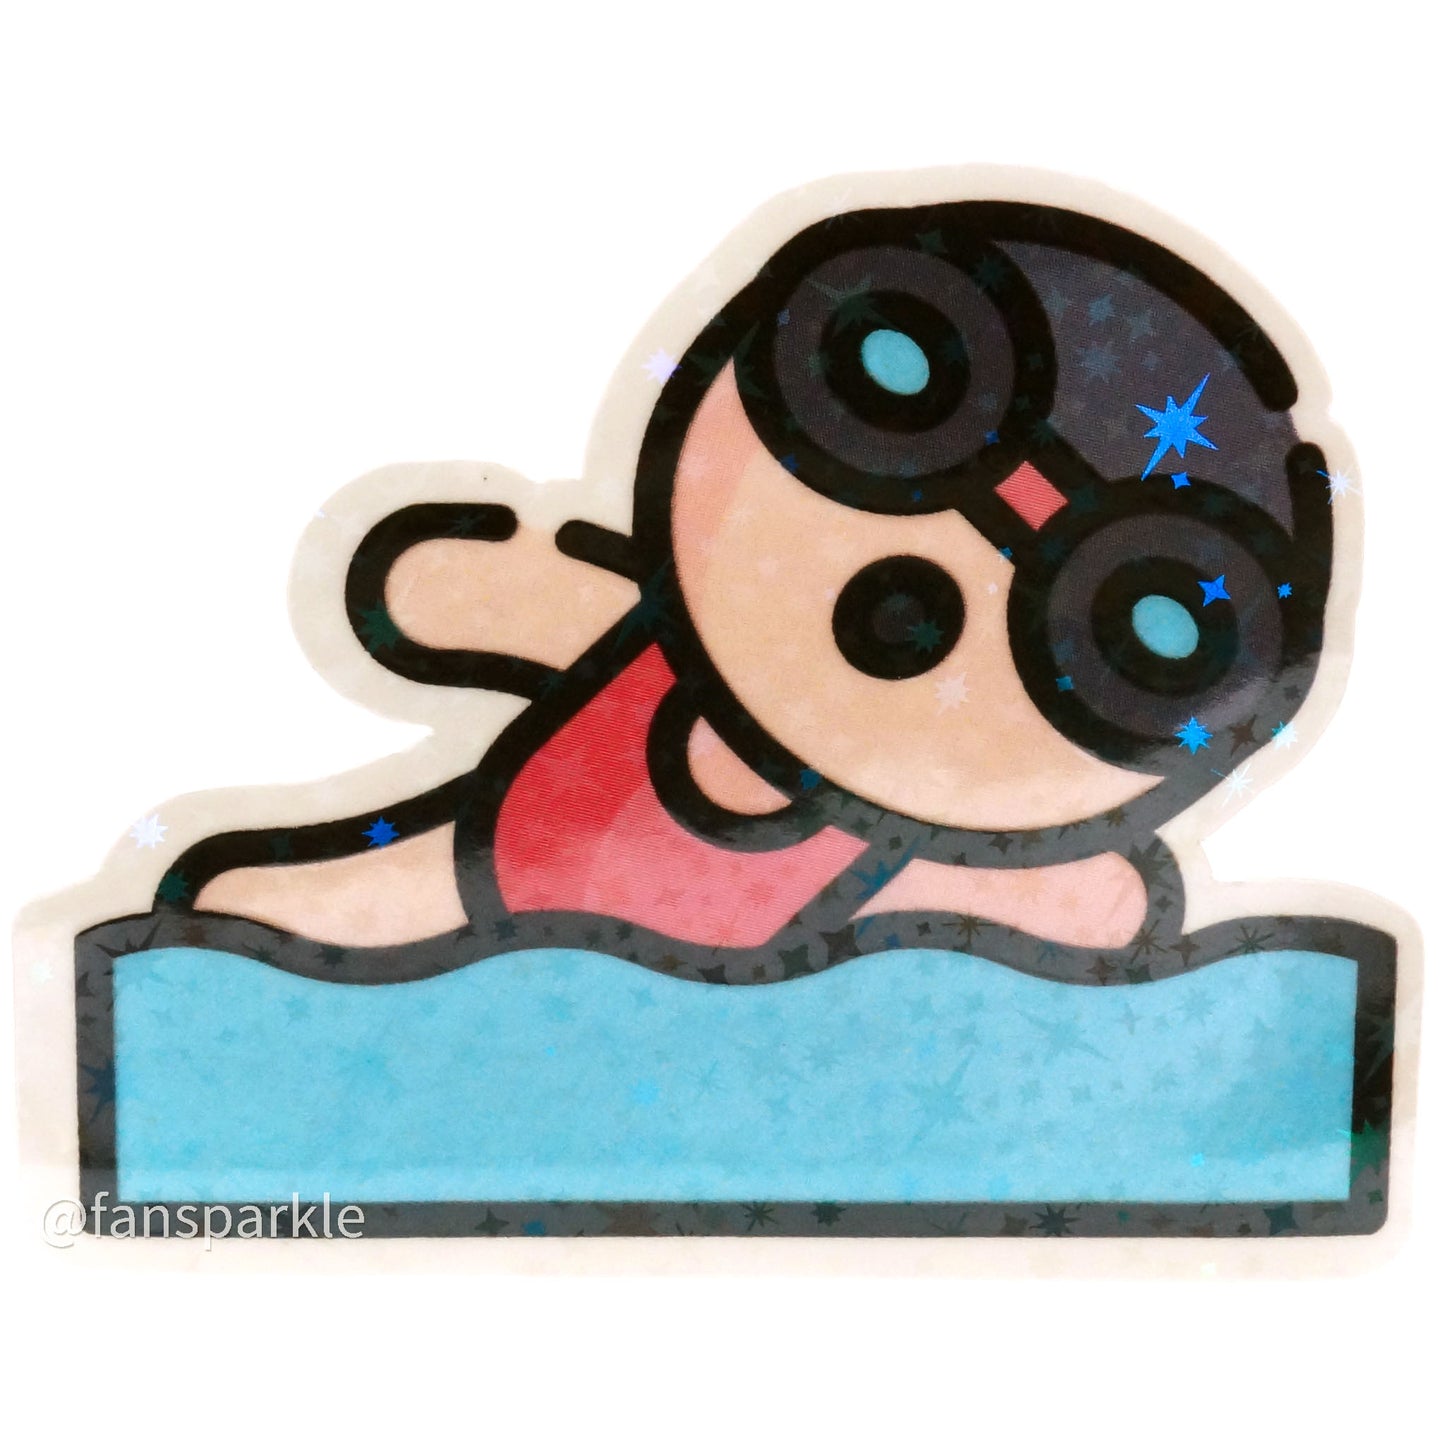 Cute Freestyle Swimmer Sticker - Fan Sparkle